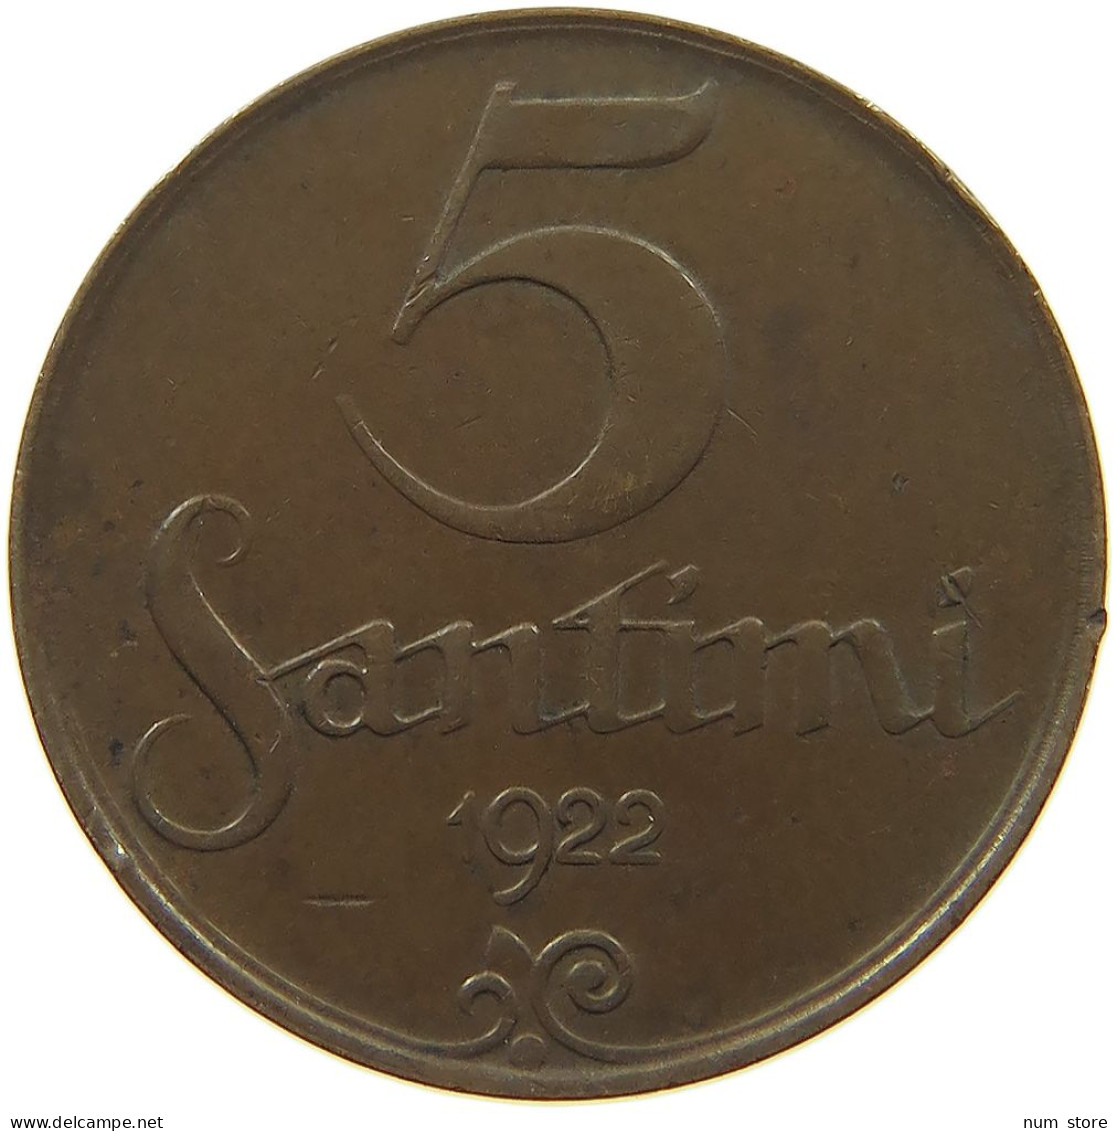 LATVIA 5 SANTIMI 1922  #c080 0687 - Letland